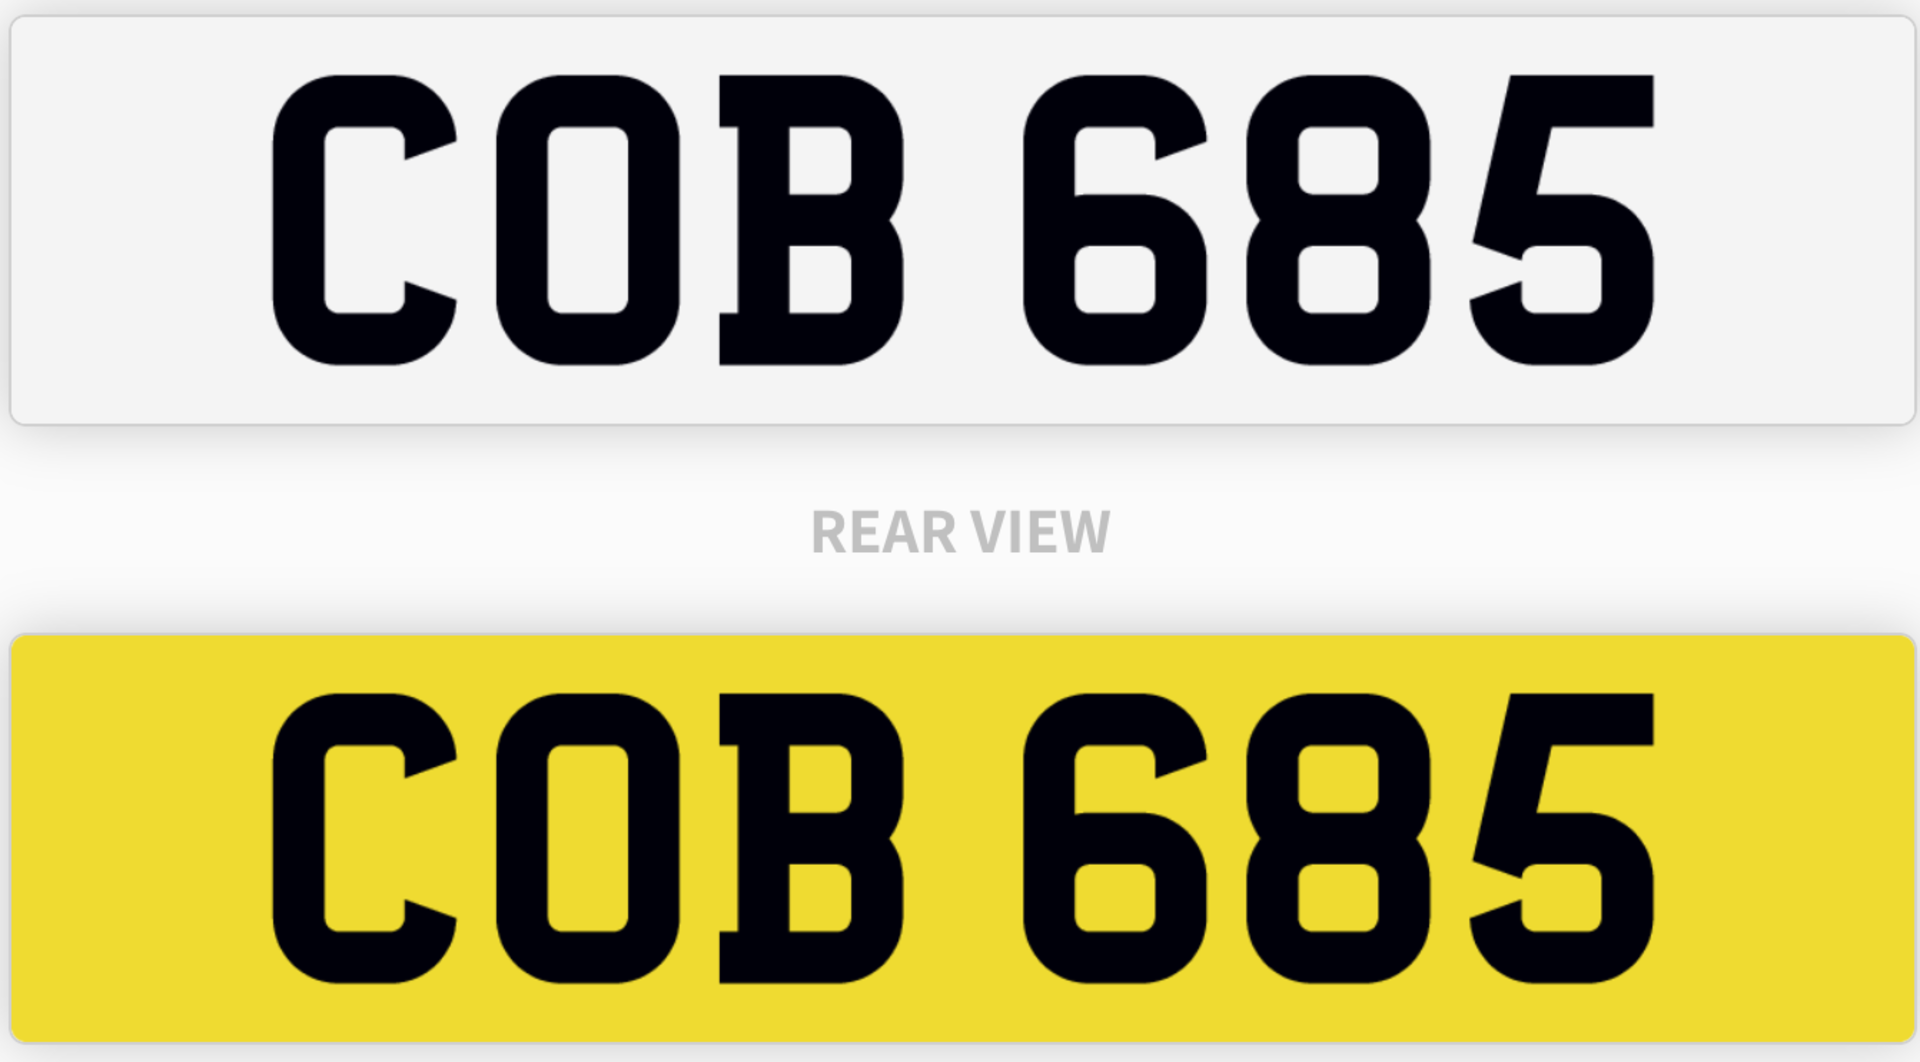 COB 685 number plate / car registration